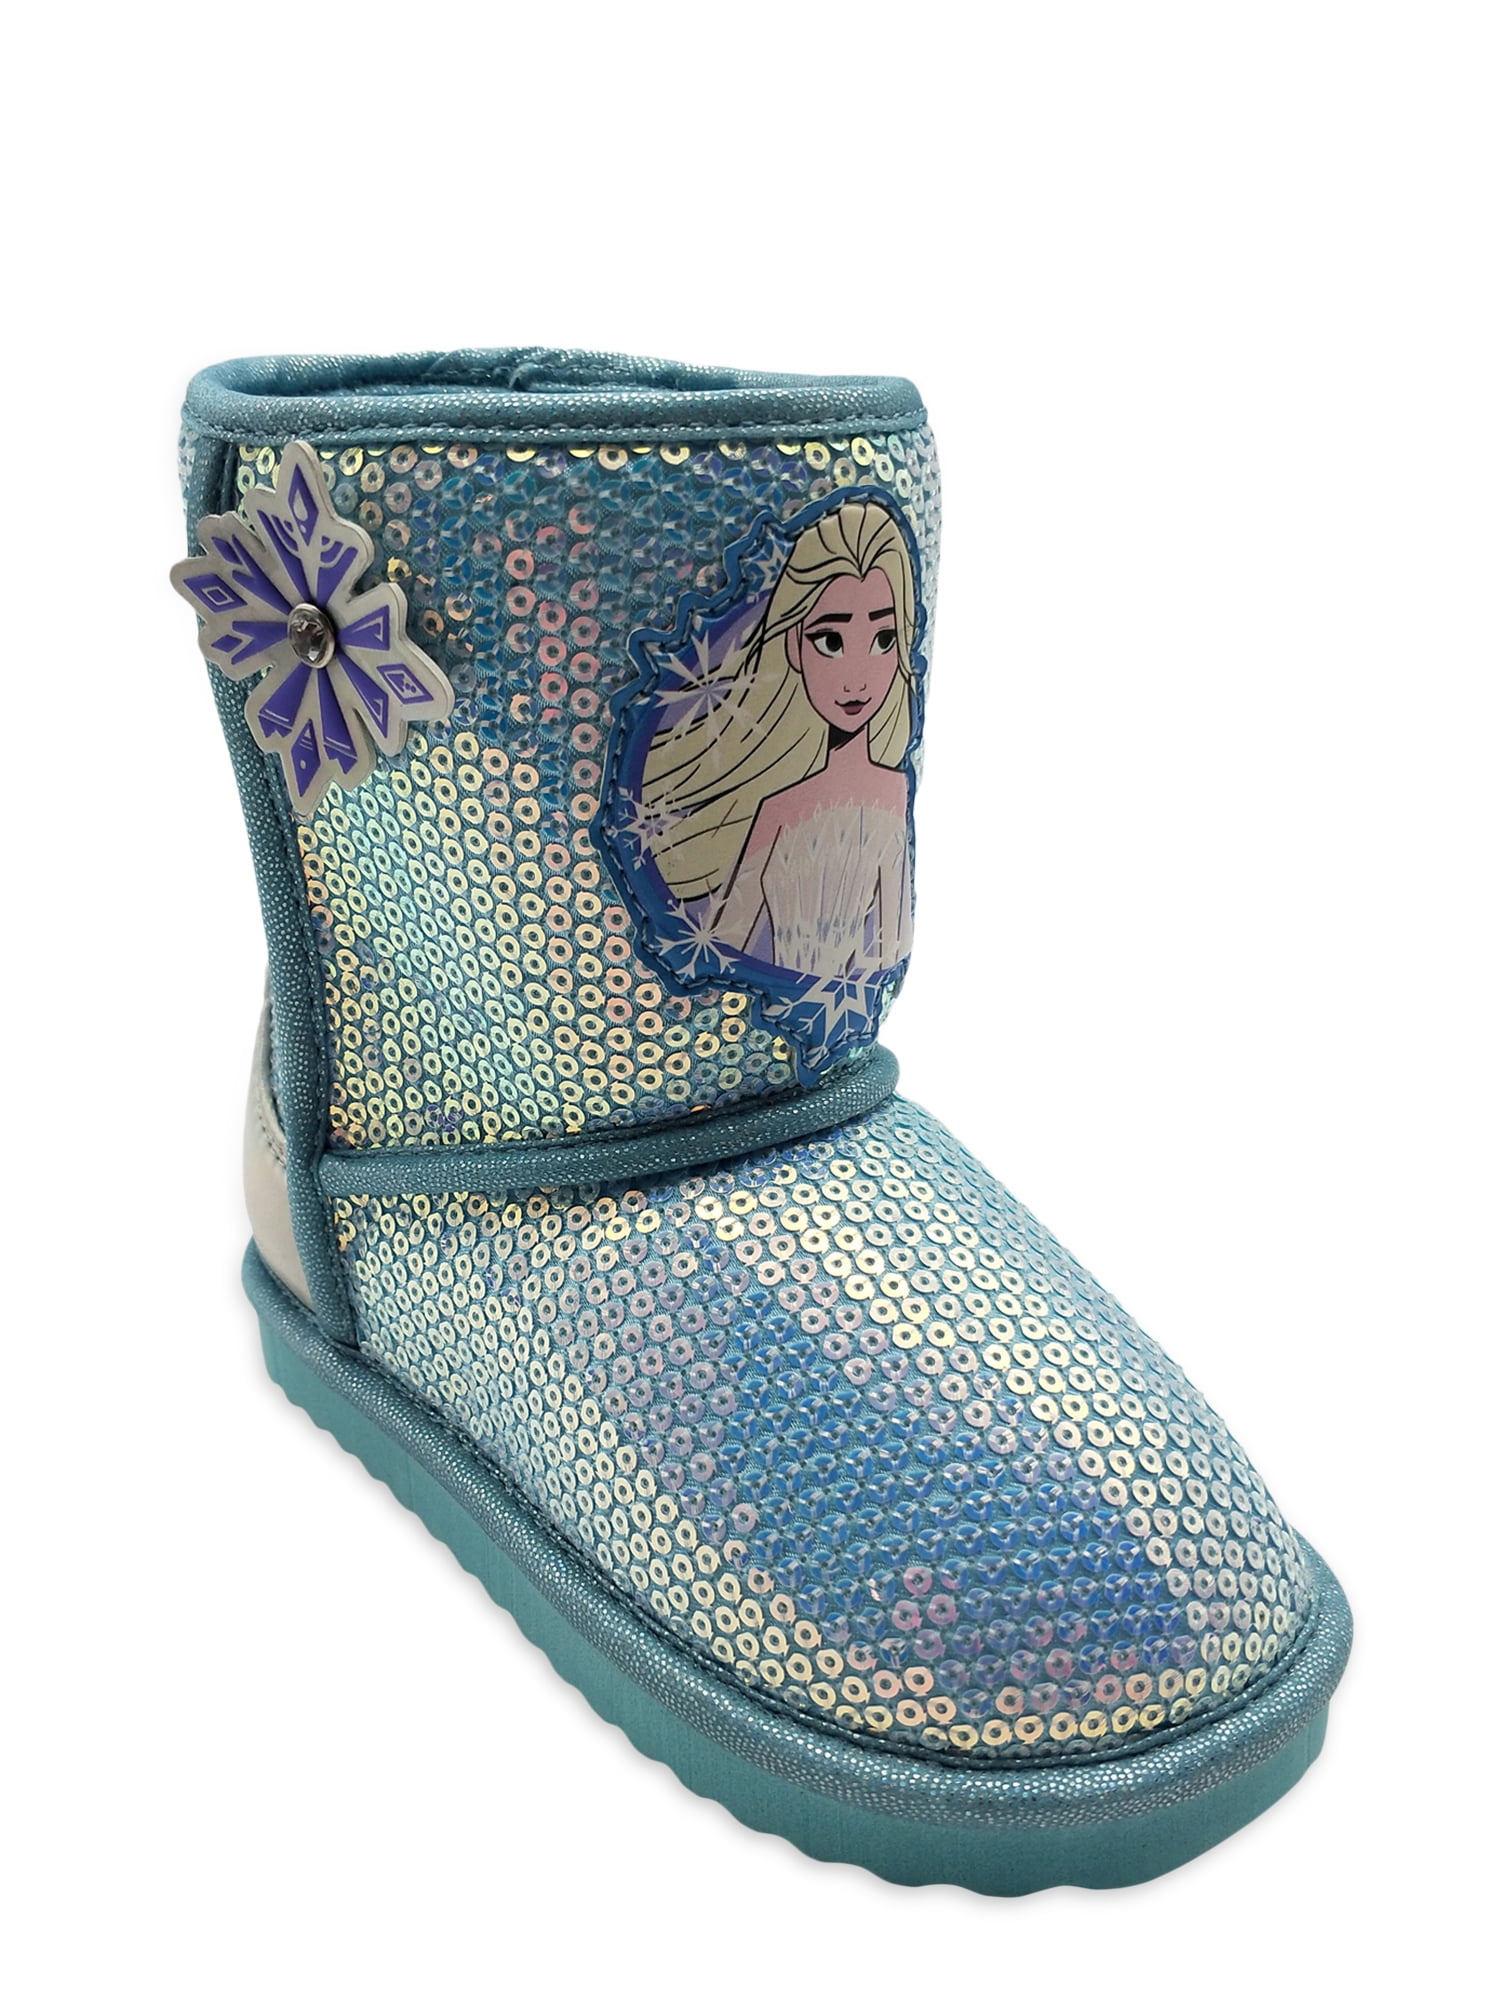 Disney Frozen Elsa & Anna Bootie Slippers  5/6 or 7/8 Toddler Iridescent Sequin 